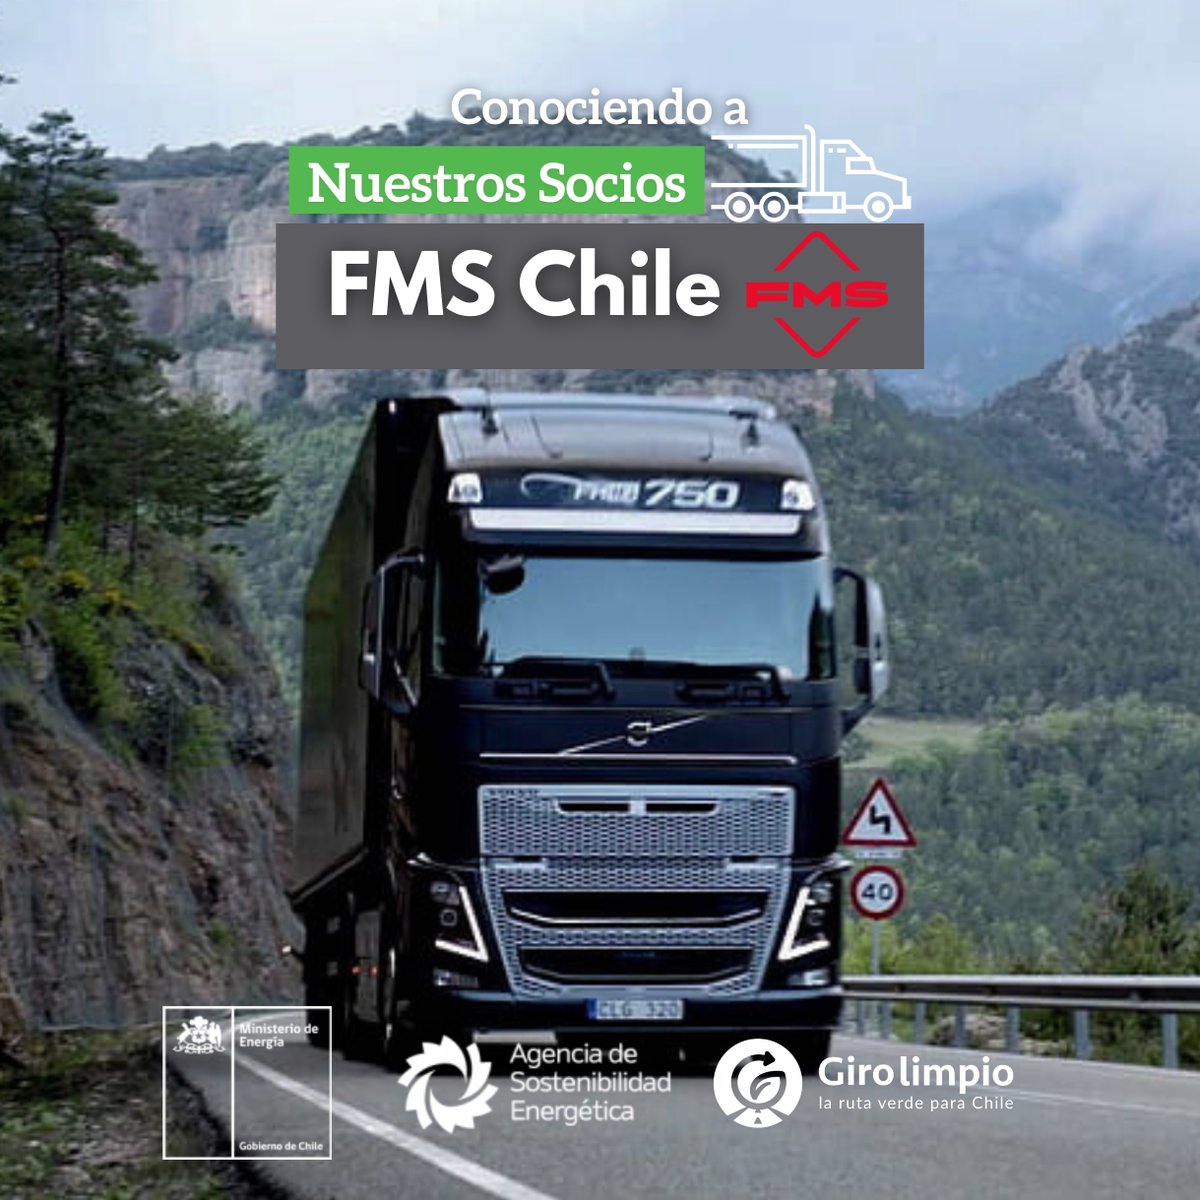 🚛Ya se encuentra disponible la Sección “Conociendo a nuestros socios- FMS Chile”

Revisa la nota aquí 👉 lnkd.in/eaPFv43p

#Transporte #eficienciaenergetica #transportedecarga #caminones 
#Girolimpio #FMSChile #FMSInternacional